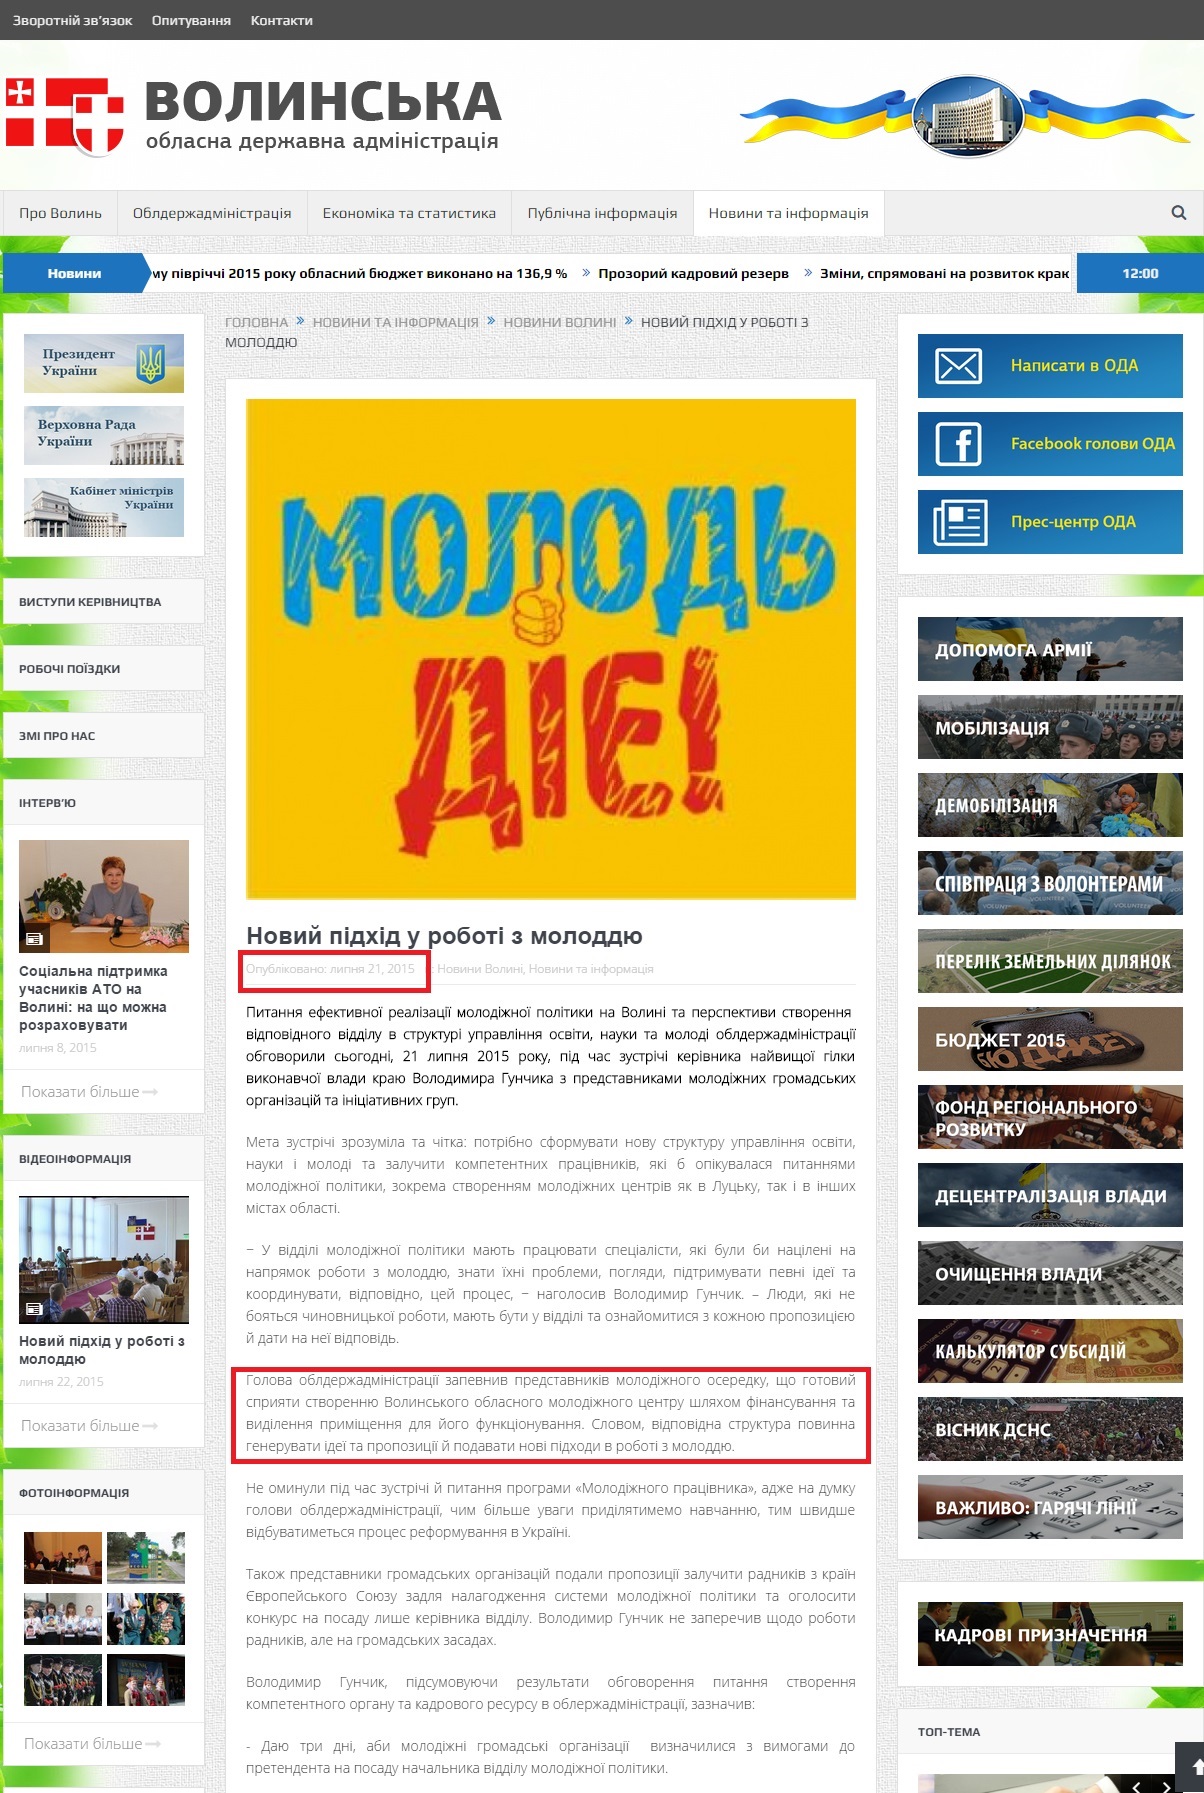 http://voladm.gov.ua/novij-pidxid-u-roboti-z-moloddyu/